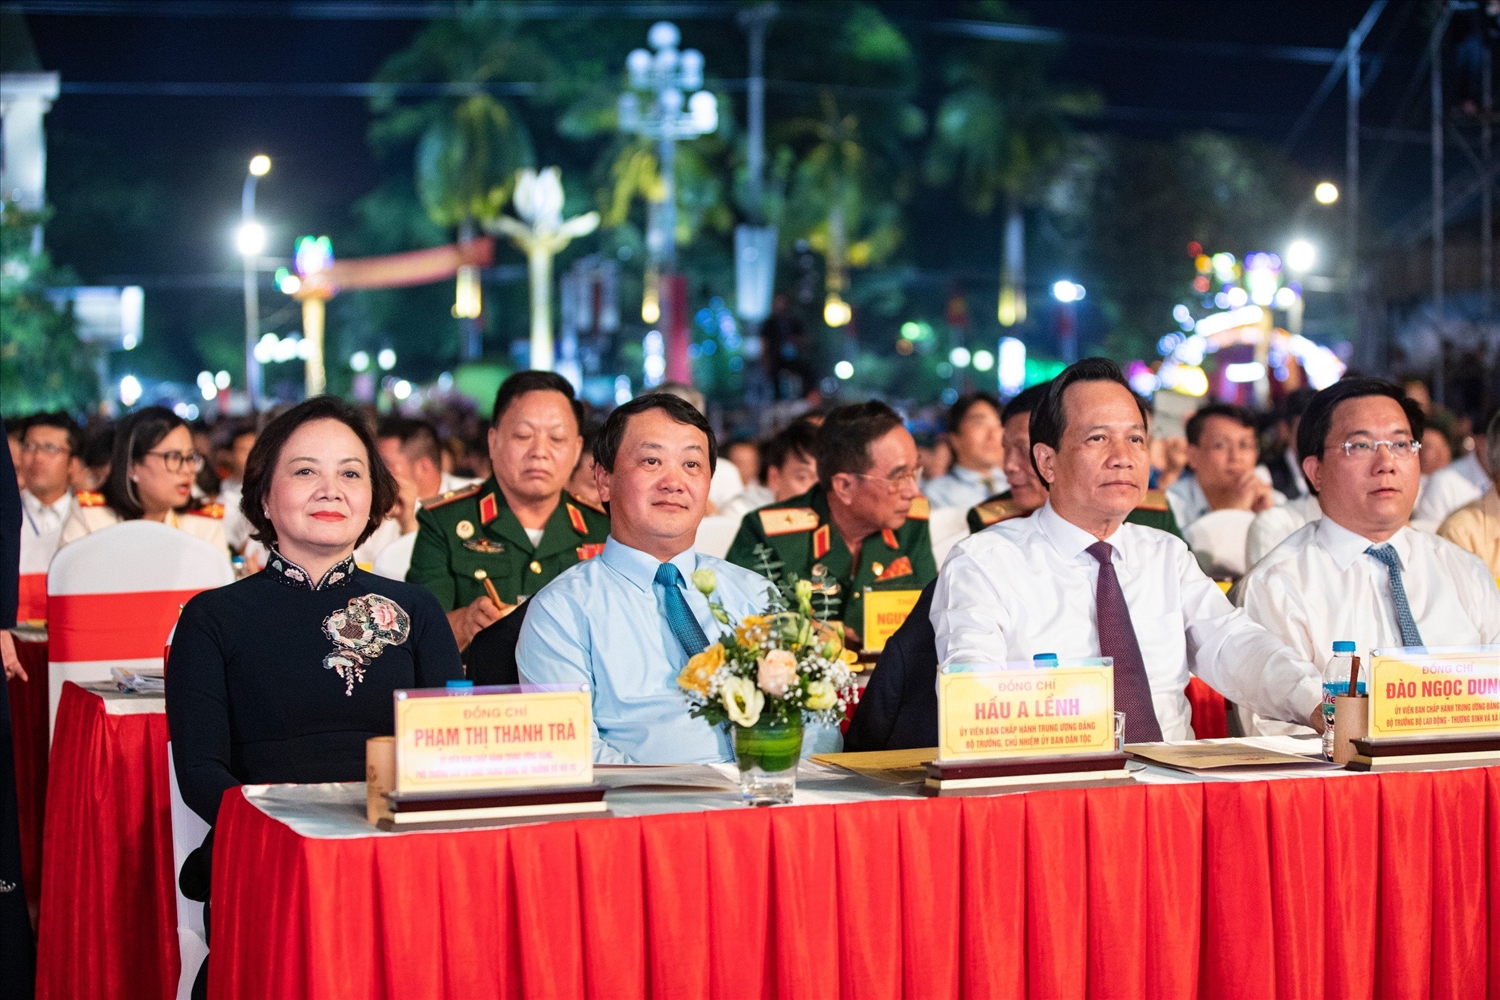 Từ trái sang phải: Bộ trưởng Bộ Nội vụ Phạm Thị Thanh Trà; Bộ trưởng, Chủ nhiệm Ủy ban Dân tộc Hầu A Lềnh; Bộ trưởng Bộ LĐTB&XH Đào Ngọc Dung.